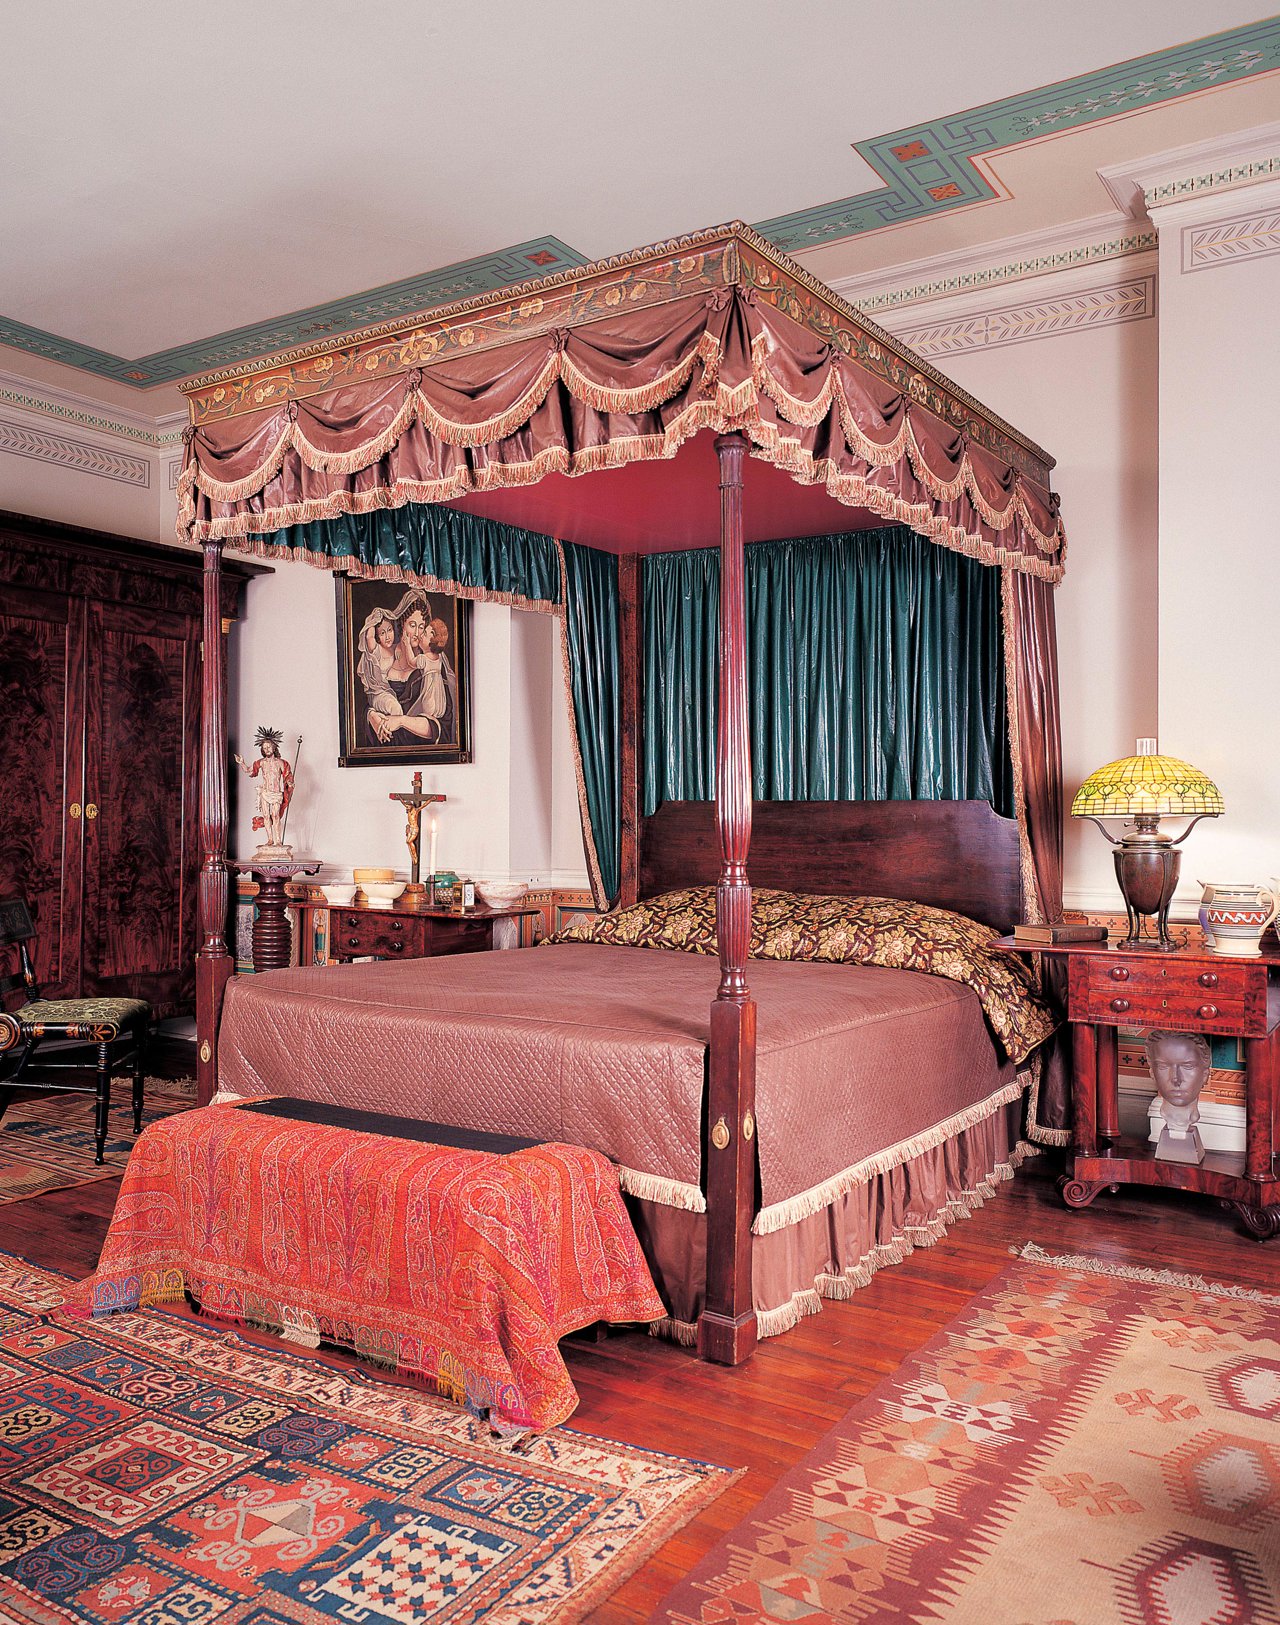 Una cama de caoba preside el dormitorio de Warhol. El dosel era el escondite favorito de las joyas de Andy. El cuadro se atribuye a John S. Bluntal. La lámpara Tiffany es de 1910.